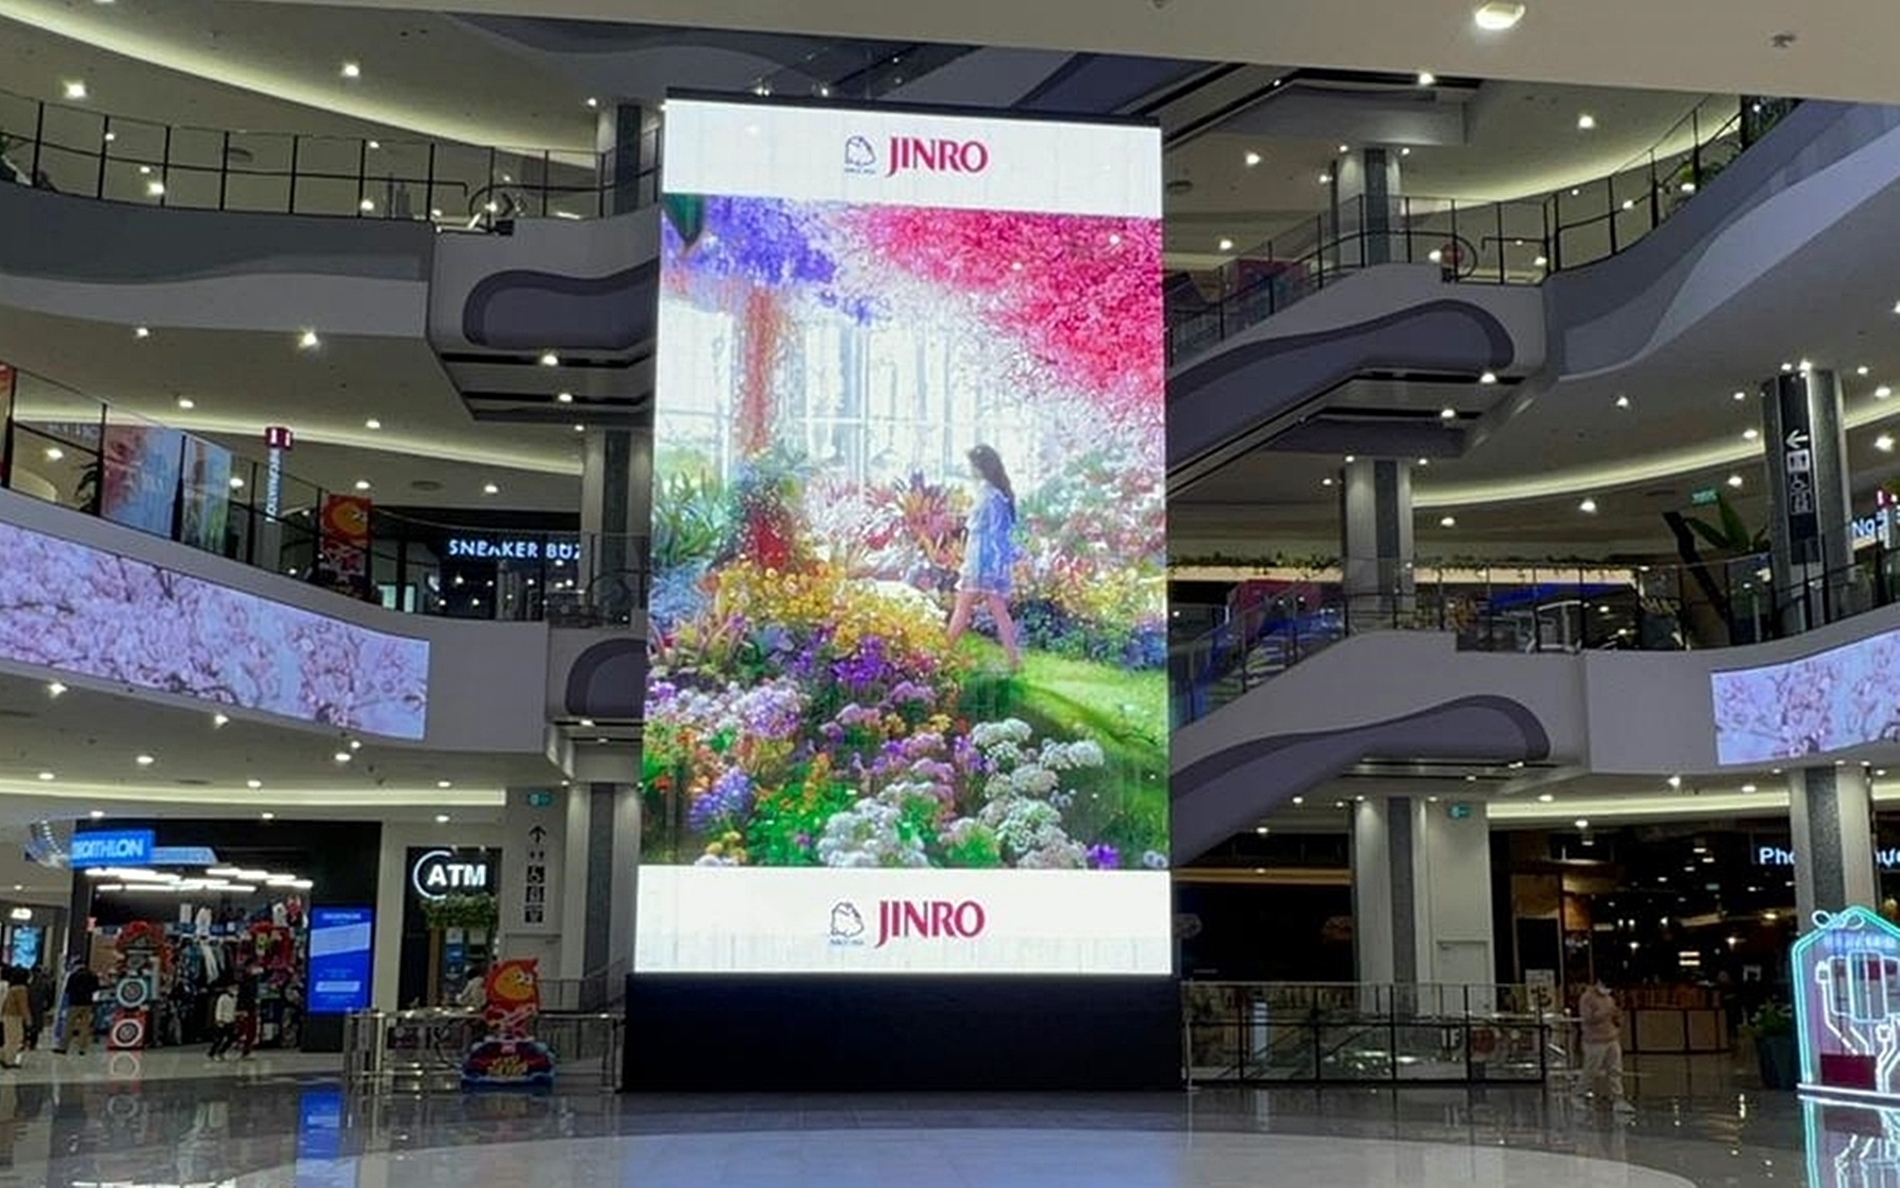 베트남 하노이의 대형 쇼핑몰 이온몰(AEON Mall) 내부에 진로(JINRO) 광고가 설치되어 있다./ 사진제공 = 하이트진로